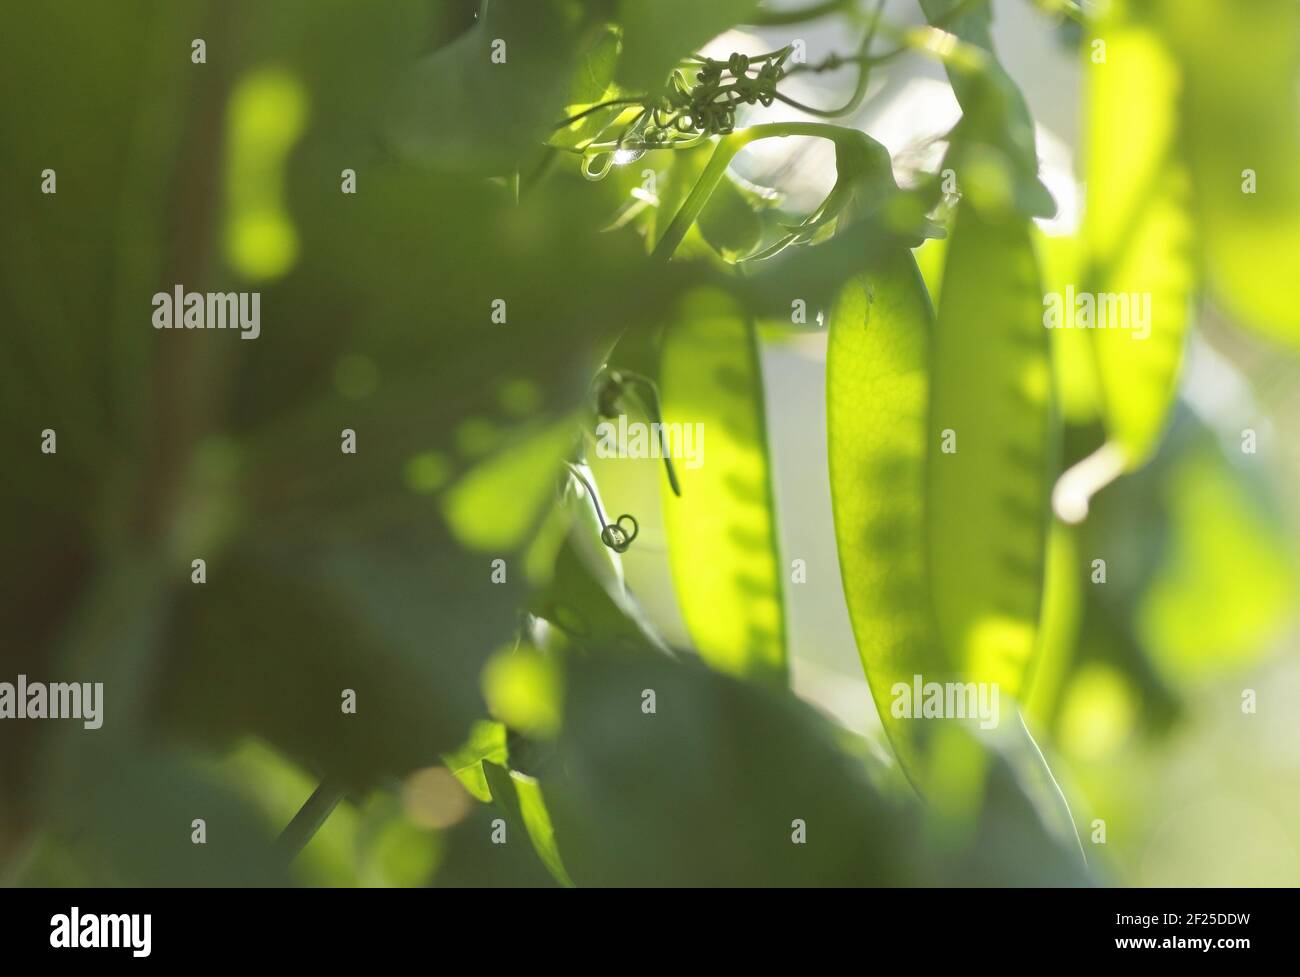 PEA-Hülsen im Sonnenlicht draußen im Garten, Nahaufnahme oder Makro der Bohne grünen Gemüsepflanze, Bio-Gartenbau und Öko-Landwirtschaft Konzept, vertikal Stockfoto